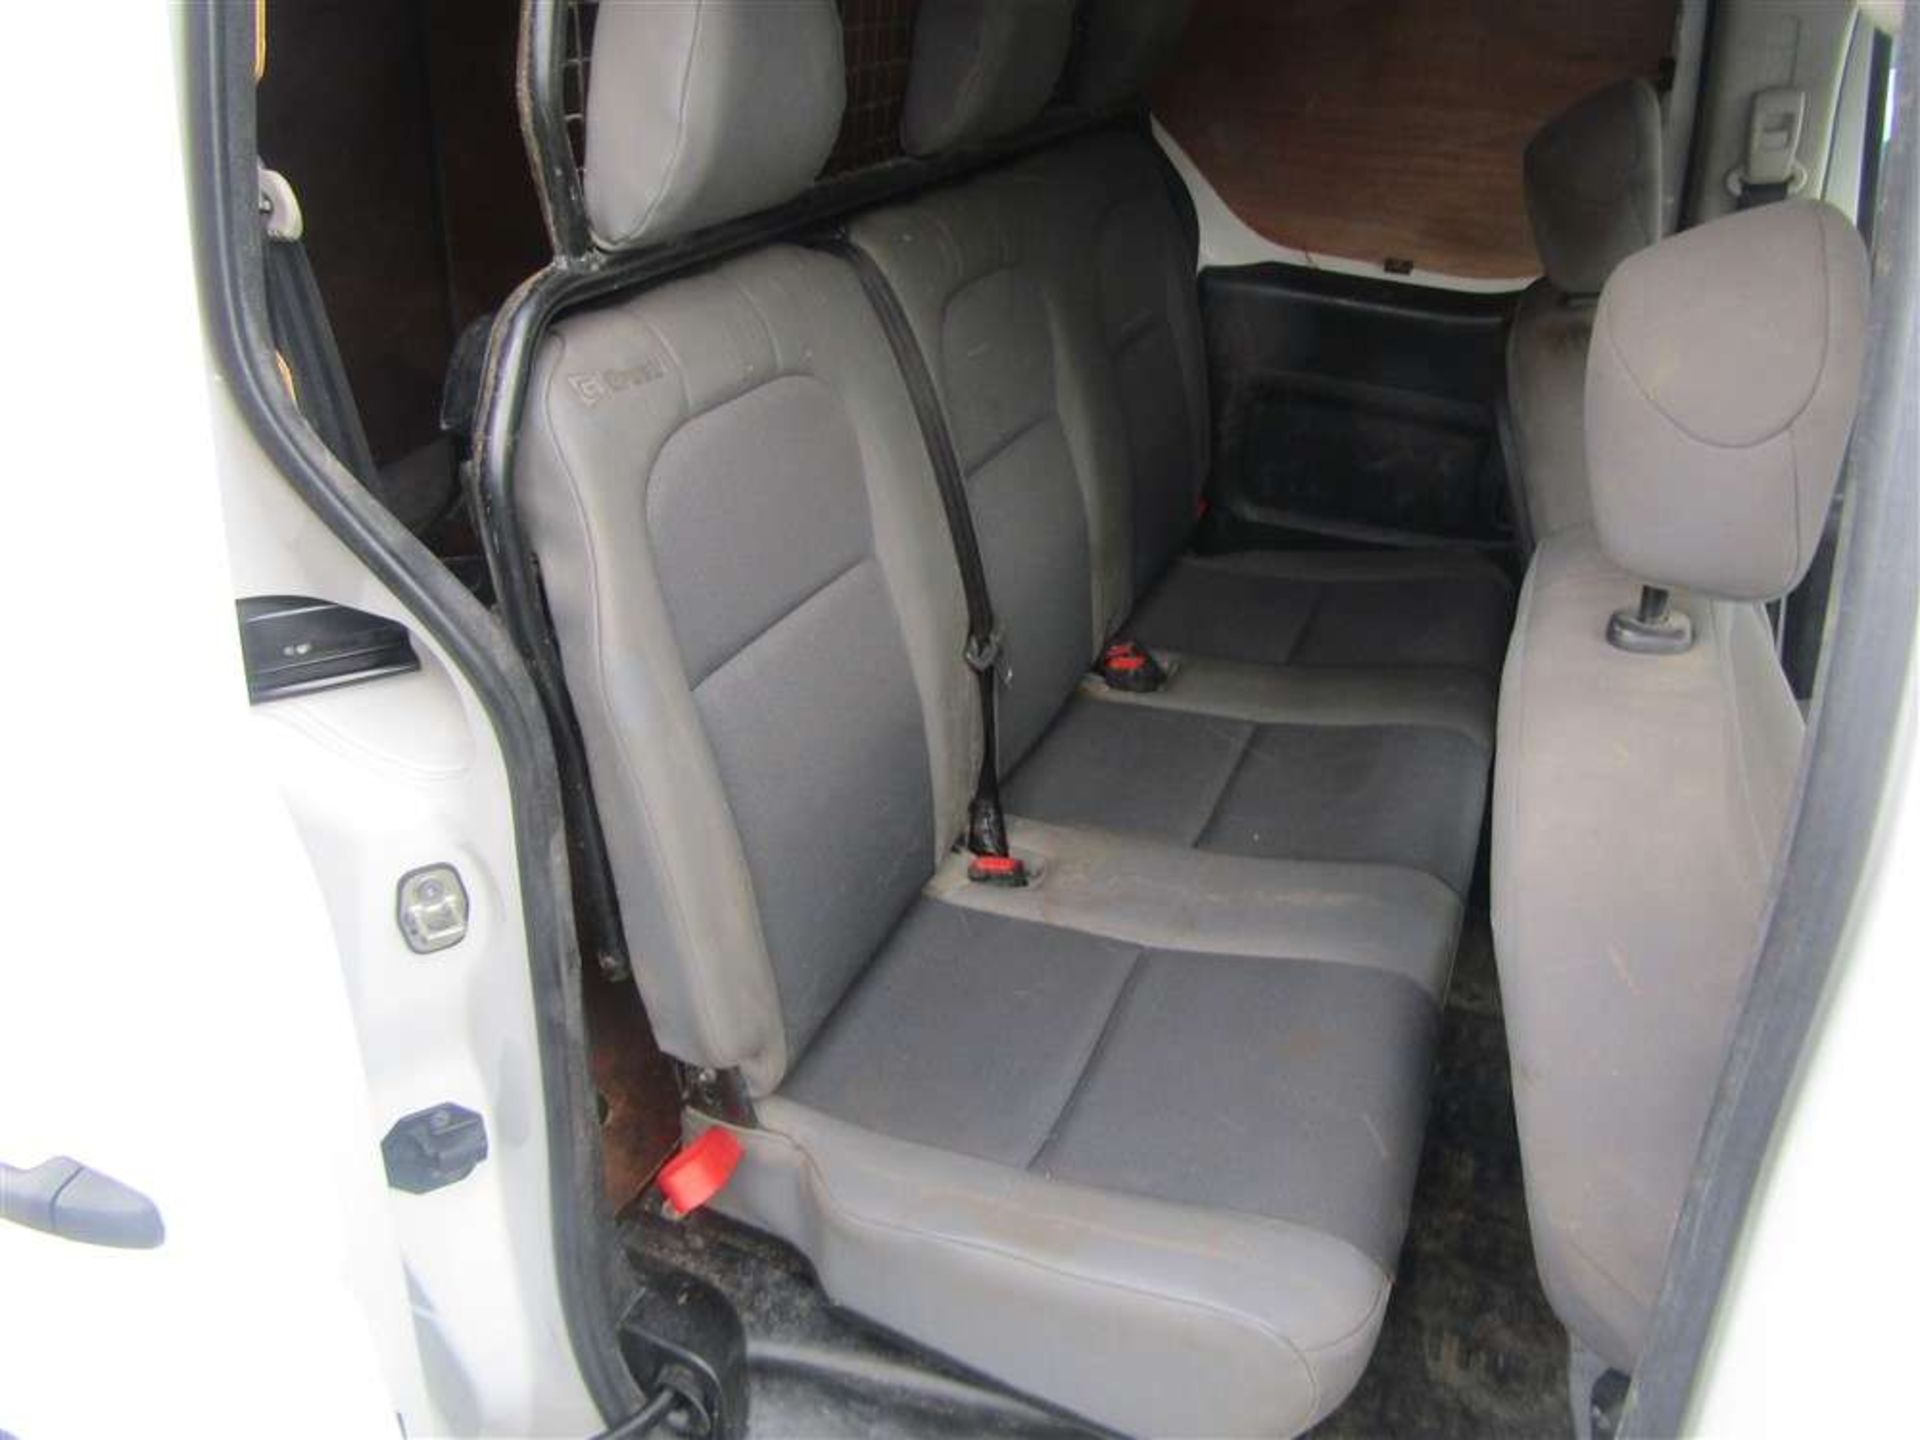 2014 14 reg Peugeot Partner CRC HDI 5 Seat LWB Crew Van - Image 6 of 8